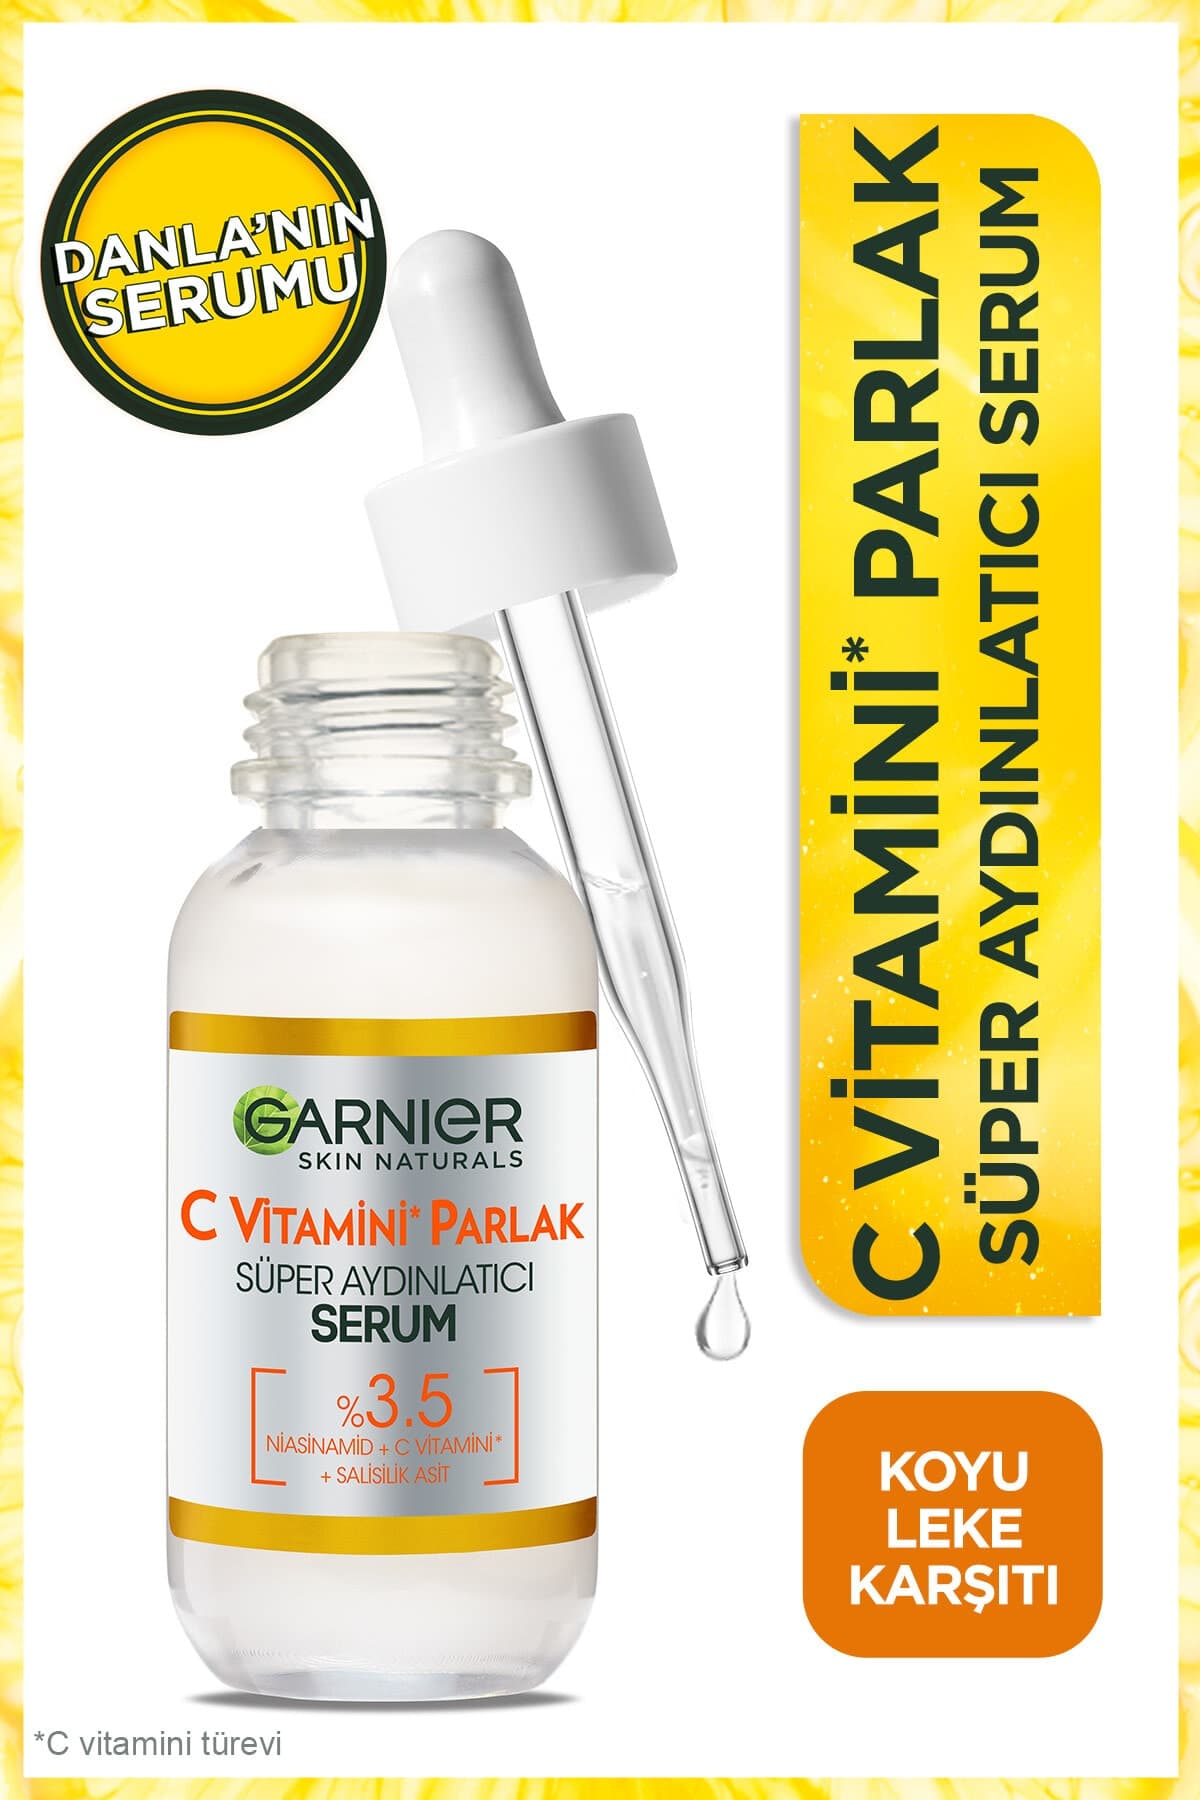 Garnier C Vitamini Parlak Süper Aydınlatıcı Serum 30ml